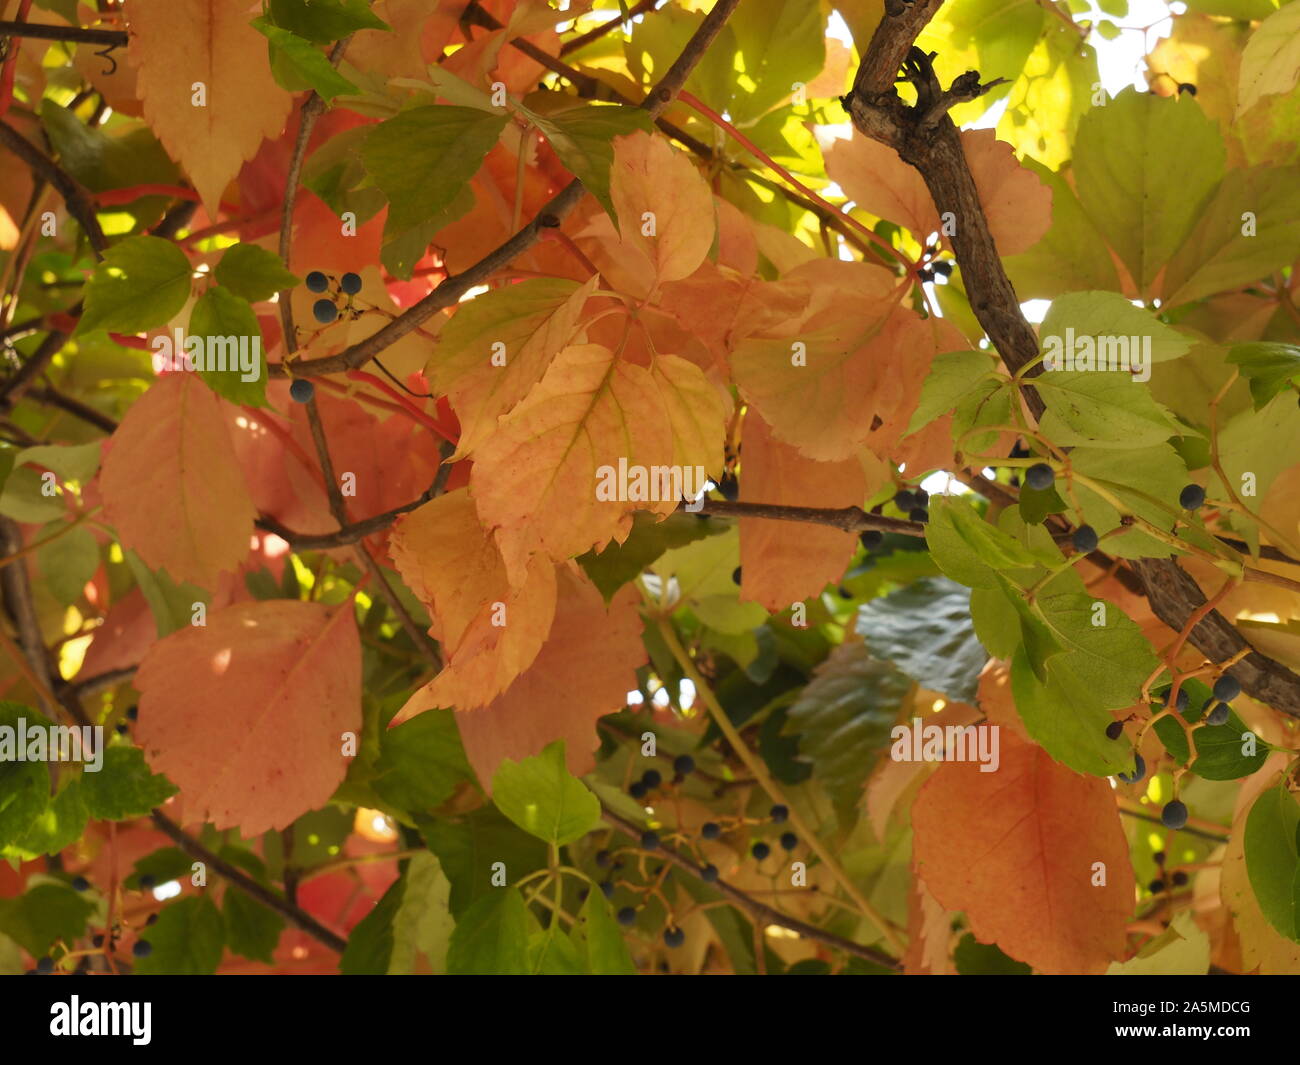 Le début de l'automne montre ses effets sur la nature. Les feuilles sont jaune, orange et rouge, comme sur cette vigne. Banque D'Images